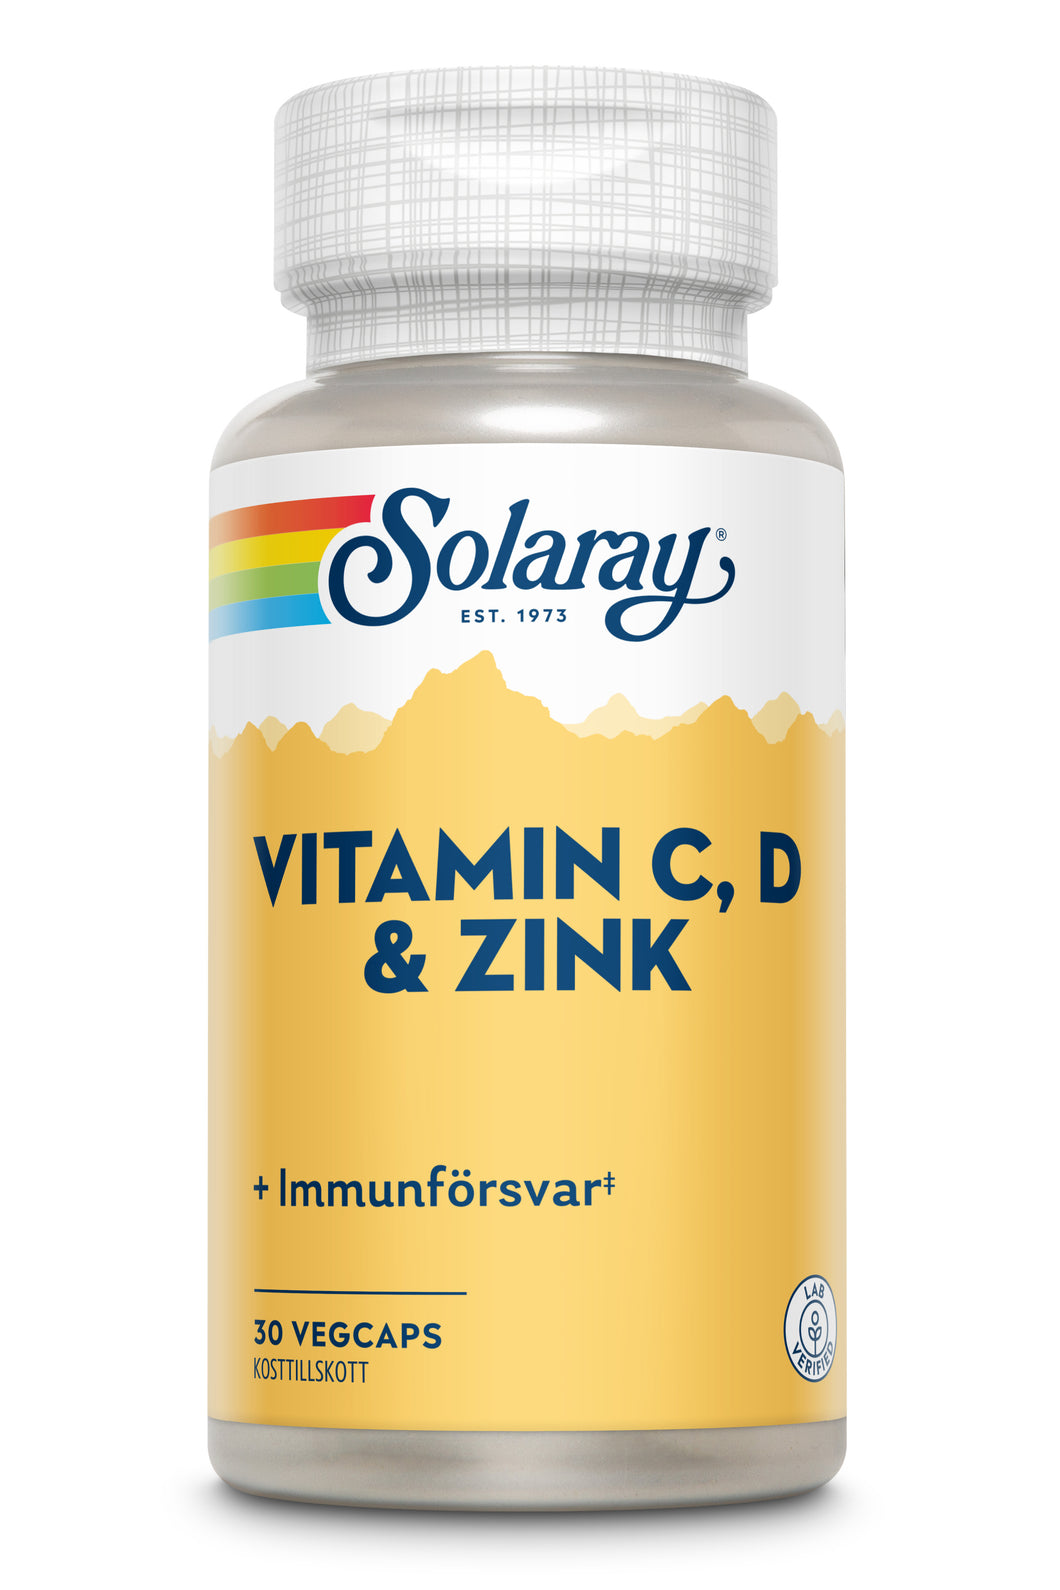 Vitamin C, D & Zink